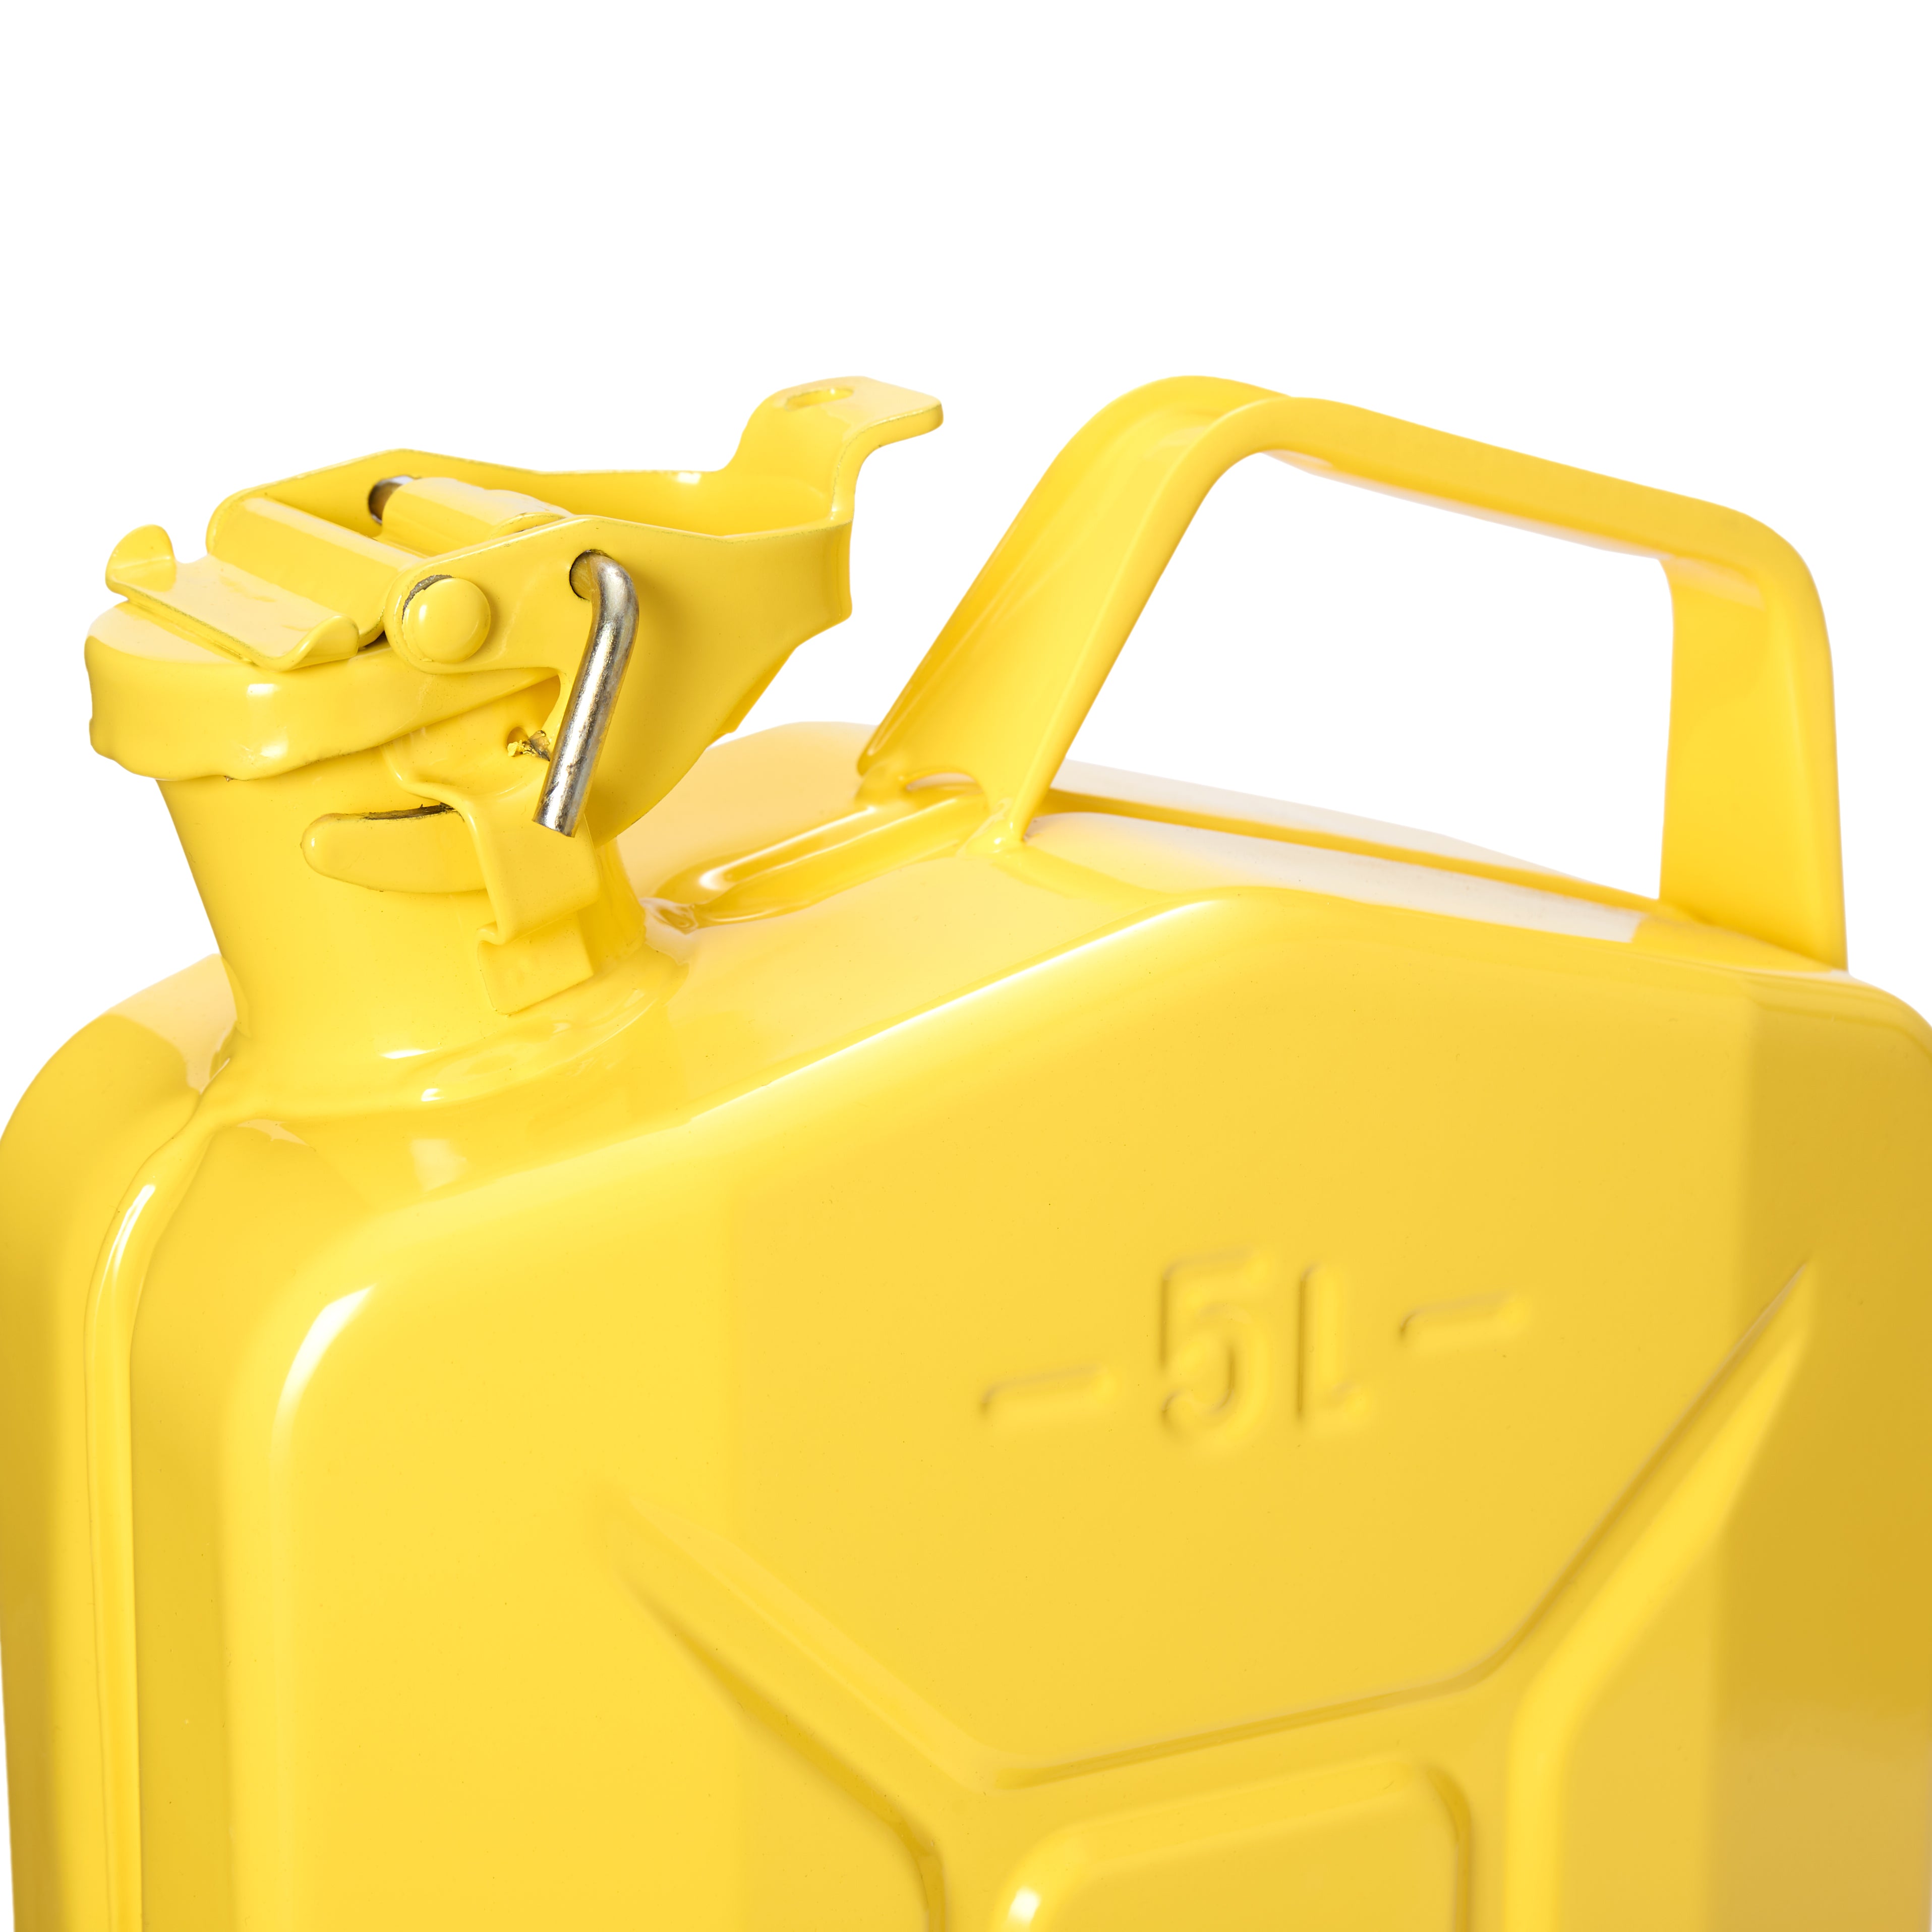 Metall-Kraftstoffkanister 5 Liter Gelb